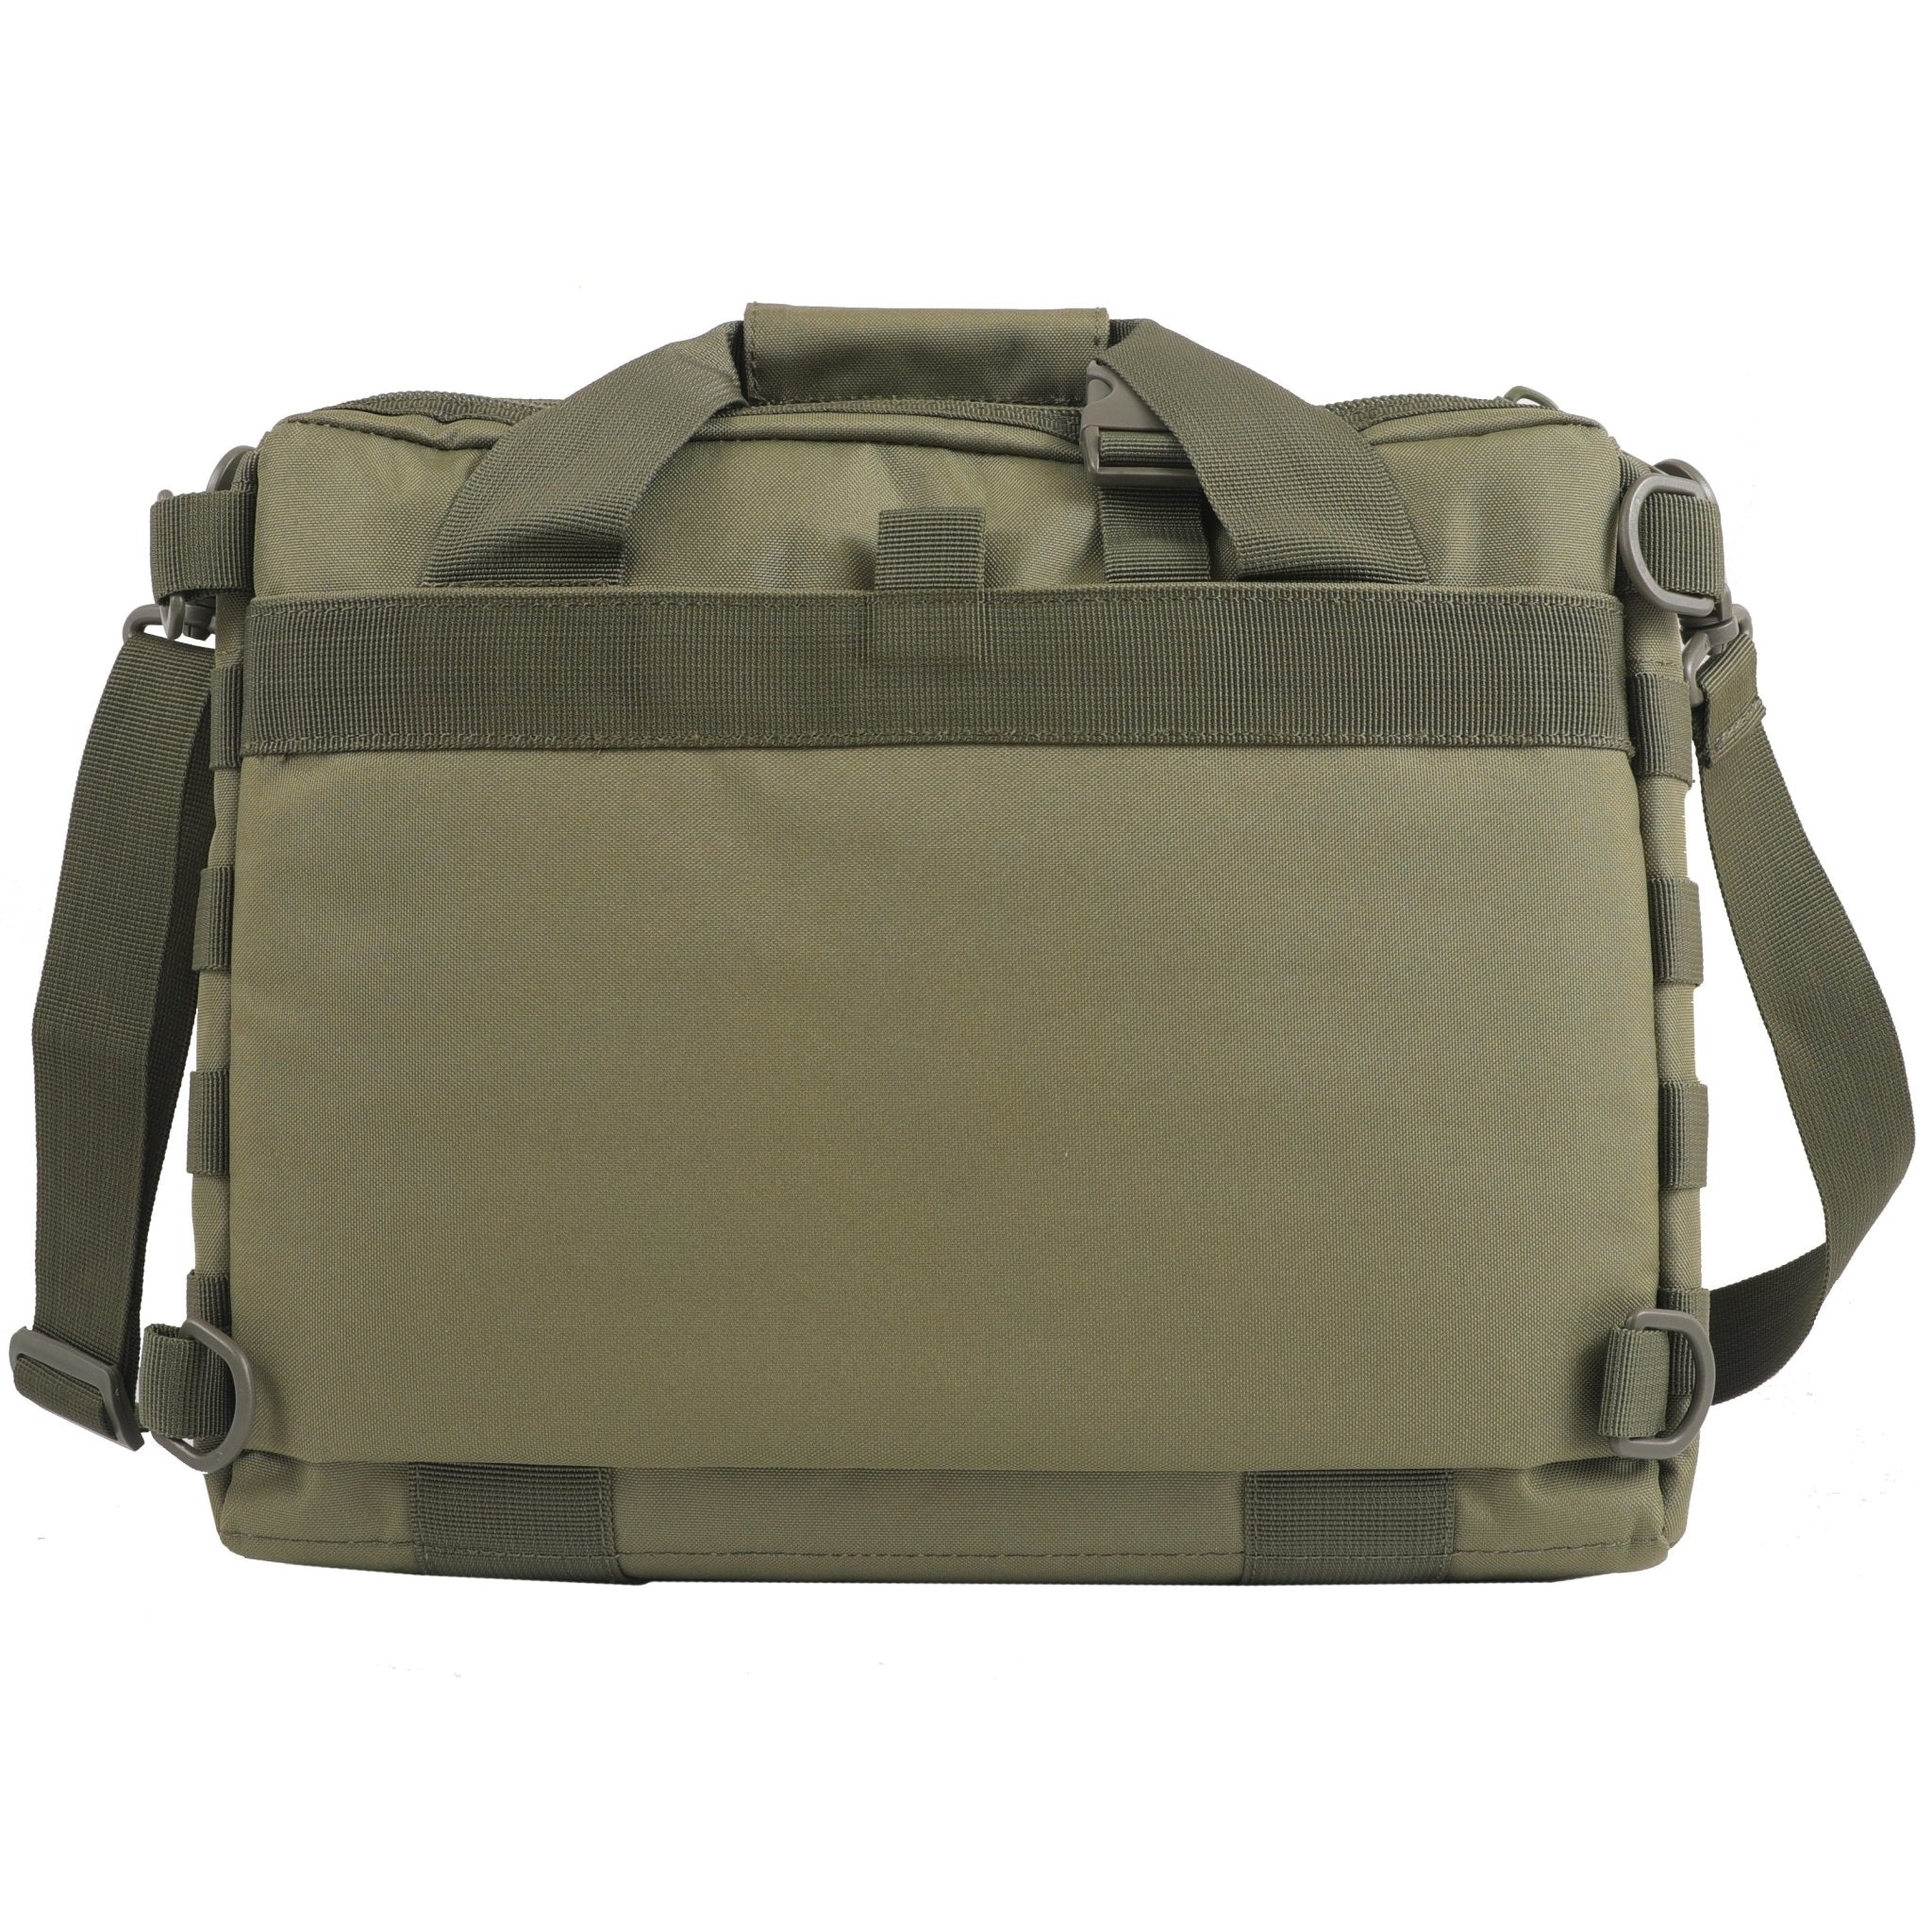 Gun Range Bag Essentials: How to Pack a Range Bag? – 14er Tactical